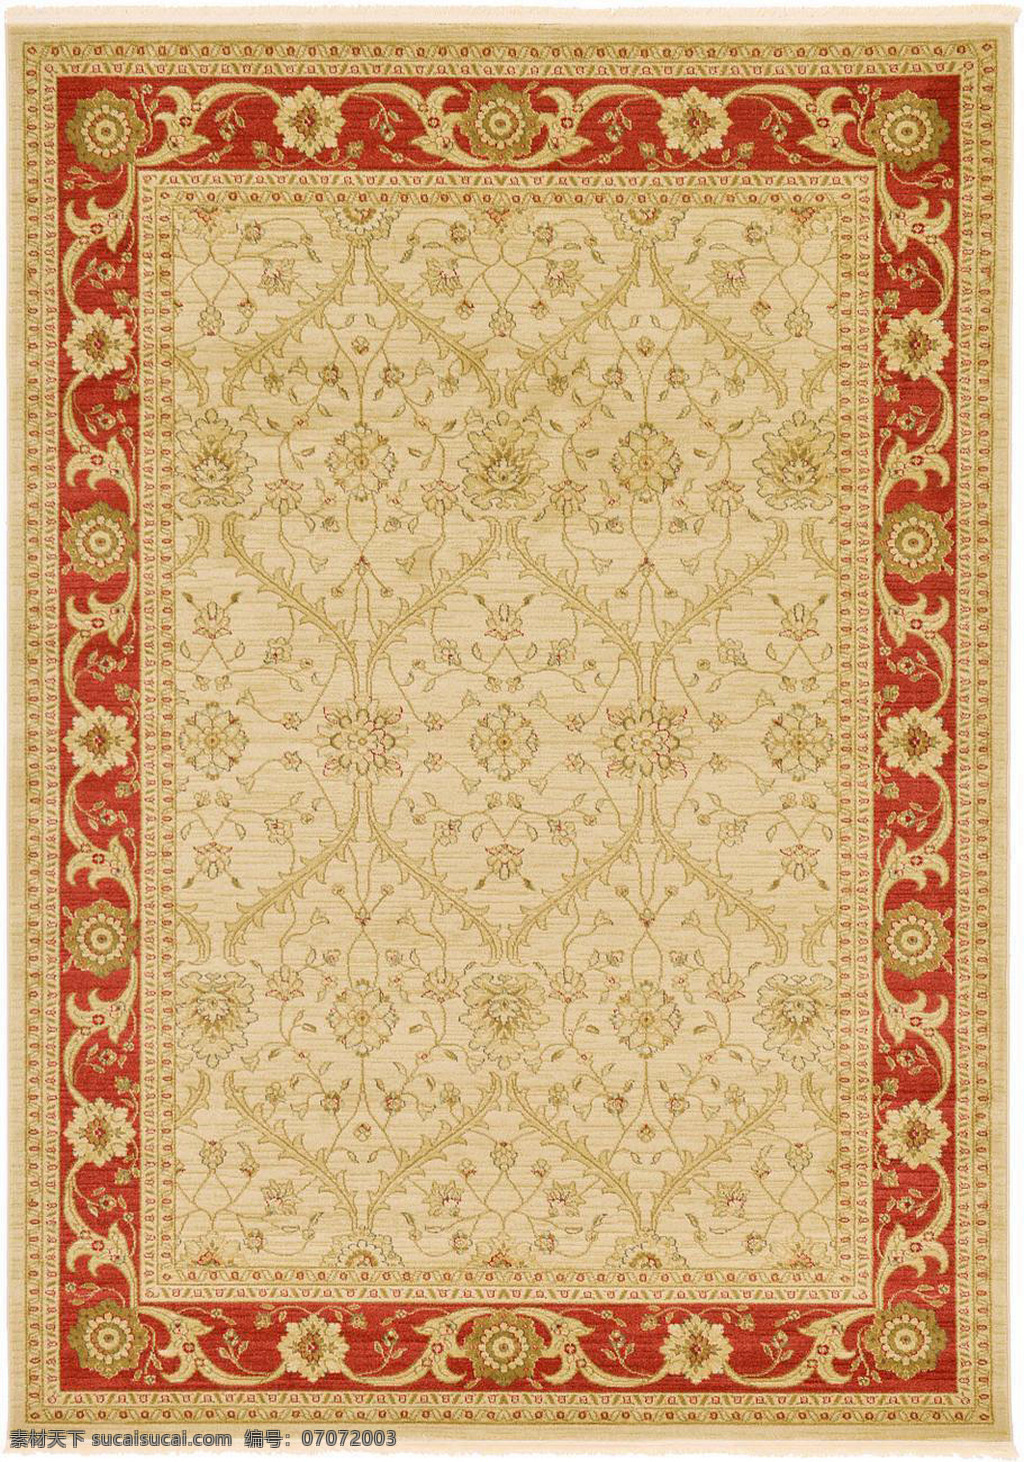 红 黄 相间 花纹 地毯 贴图 纹理 室内设计 材质 环境设计 坐垫 矩形 毛毯 图纹 布料